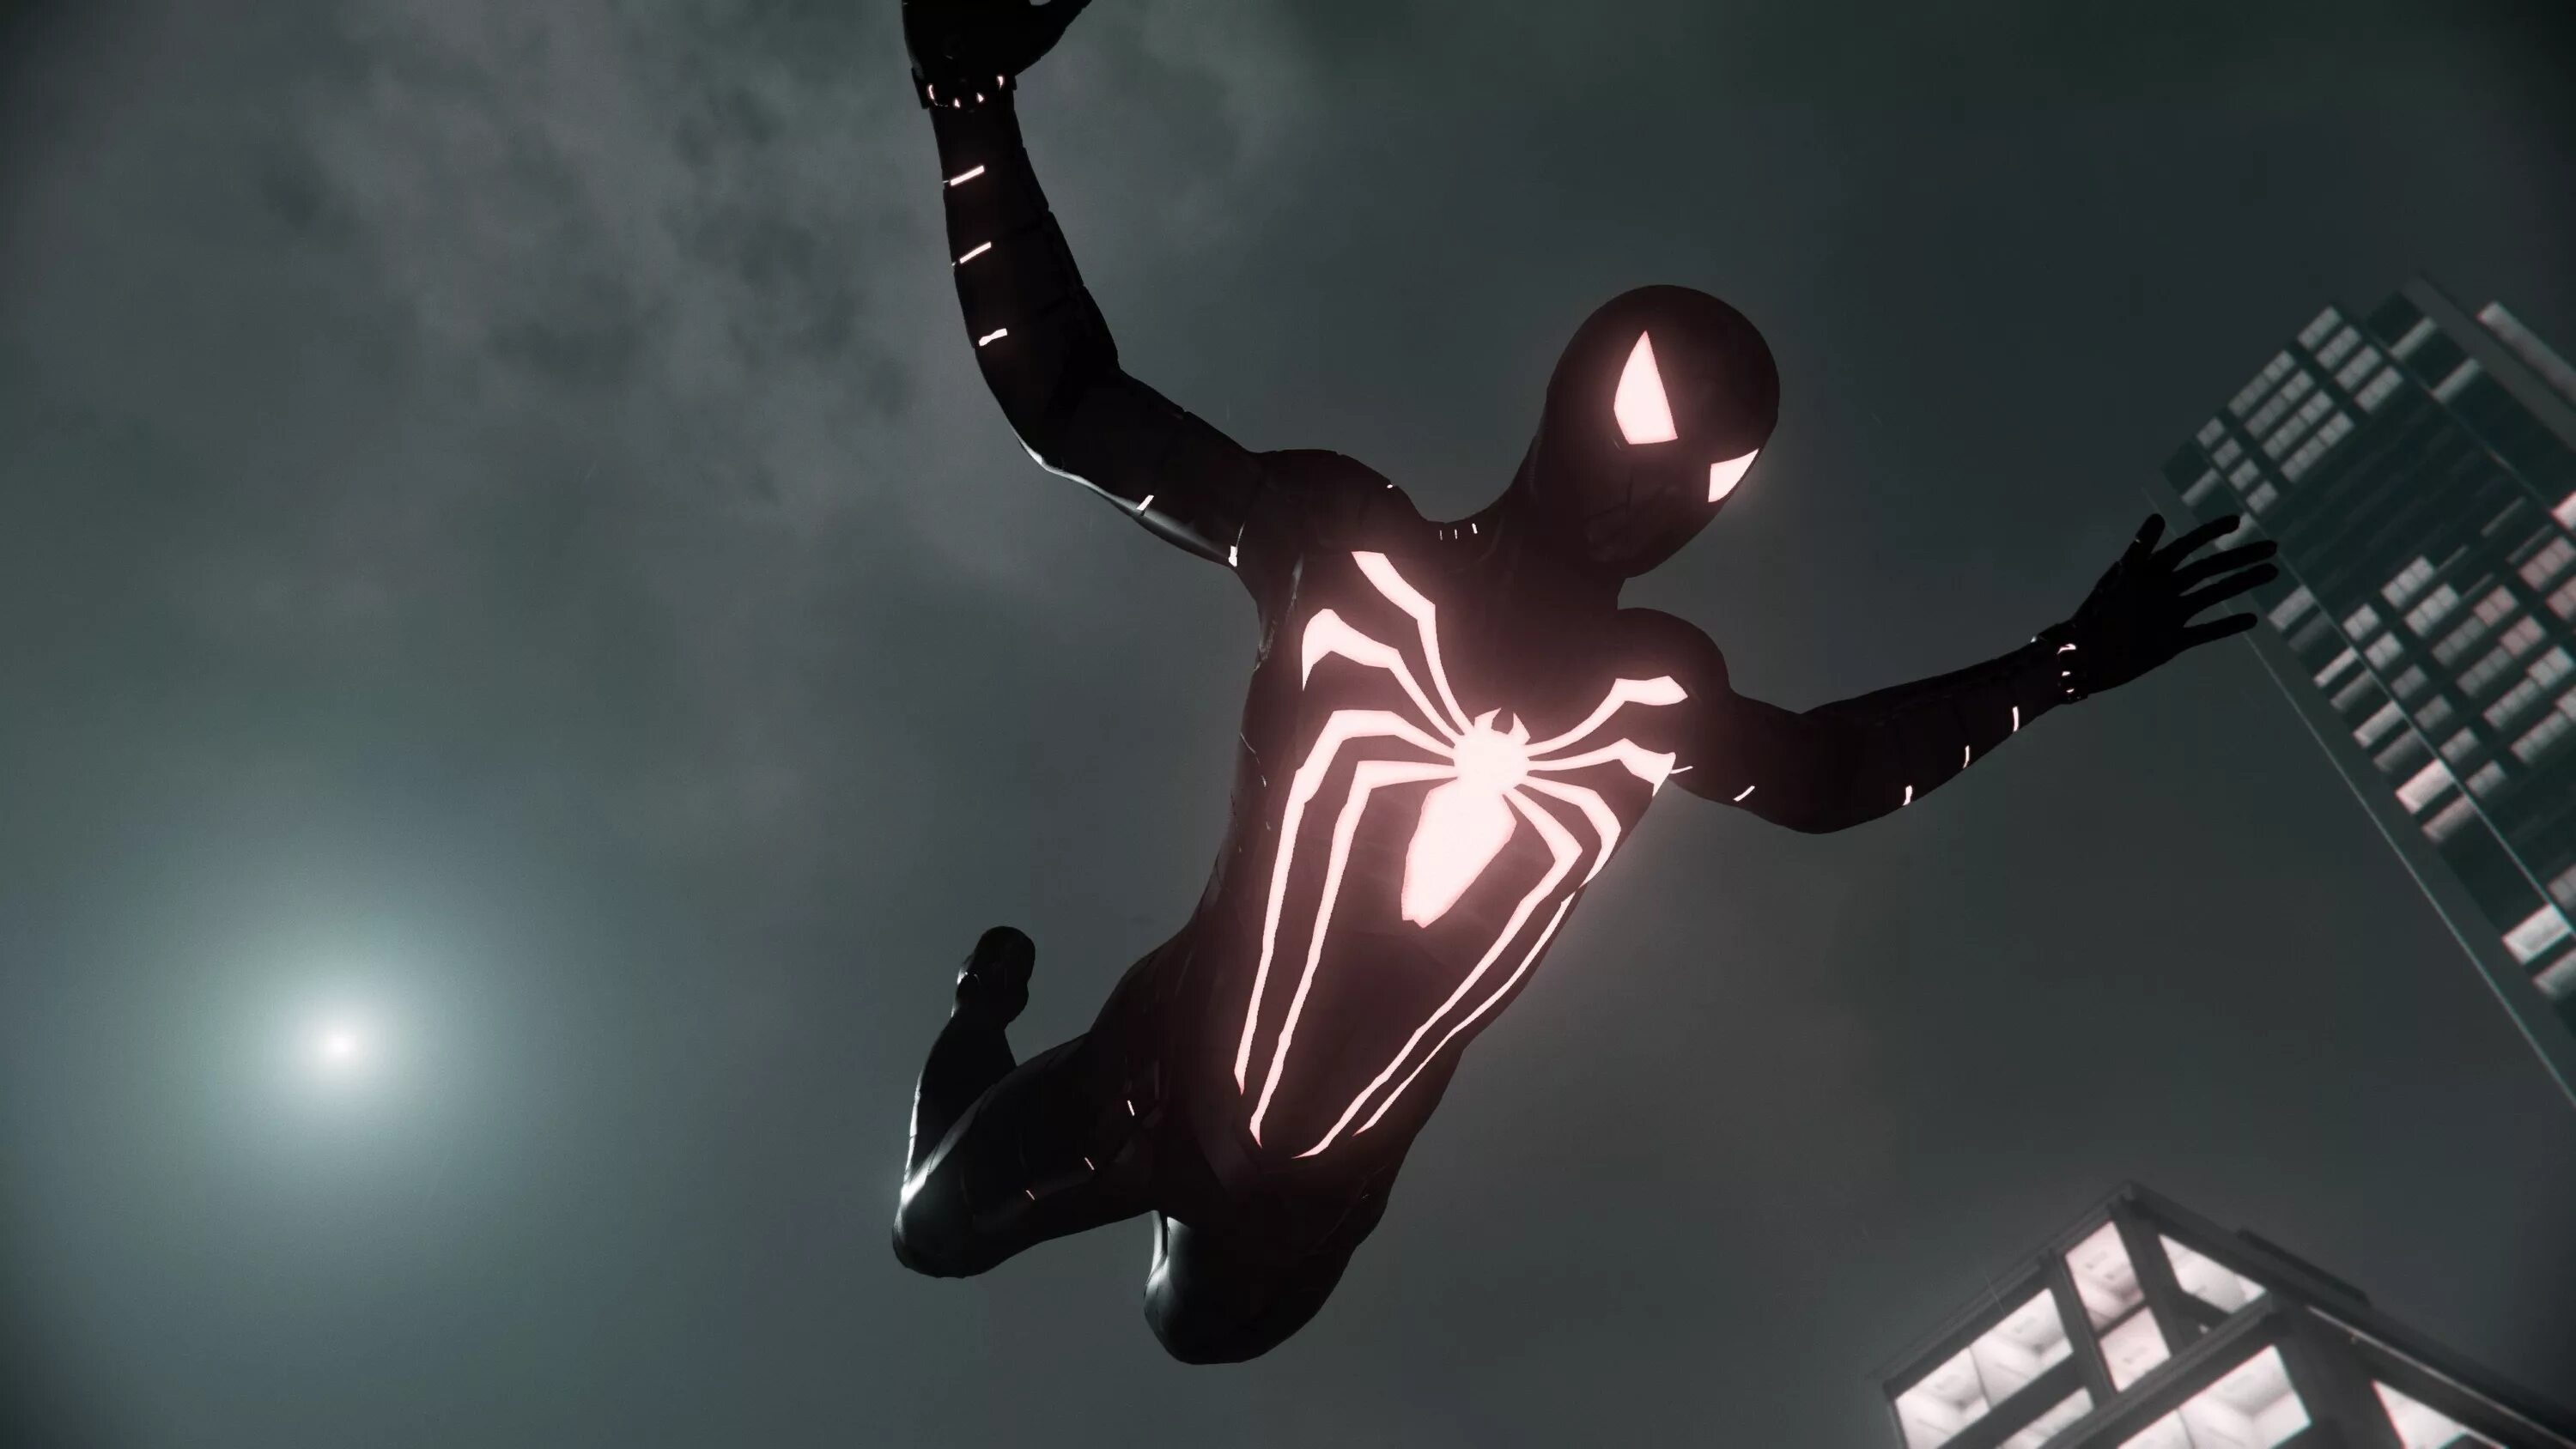 Spider man 4. Человек-паук ps4 2020. Spider Armor MK 2. Spider man ps4 Suit. Spider man ps4 Armor mk4.